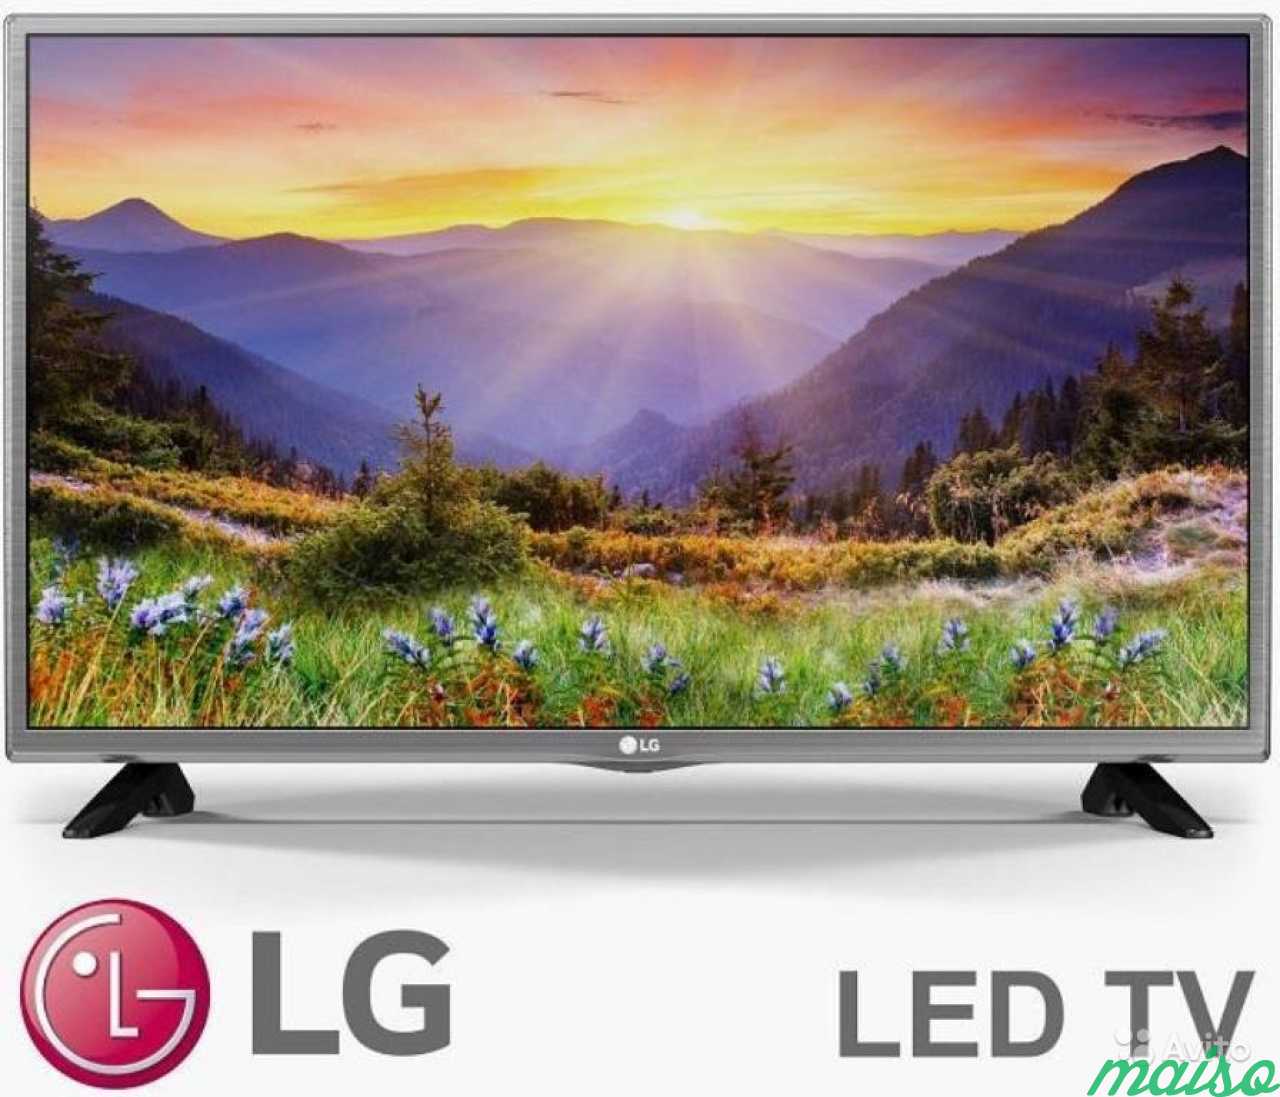 Телевизор lg 32 см. LG 32lh519u. 32" Телевизор LG 32lh513u led. Телевизор LG 32 Full LG led Smart TV. LG 32lf510u.